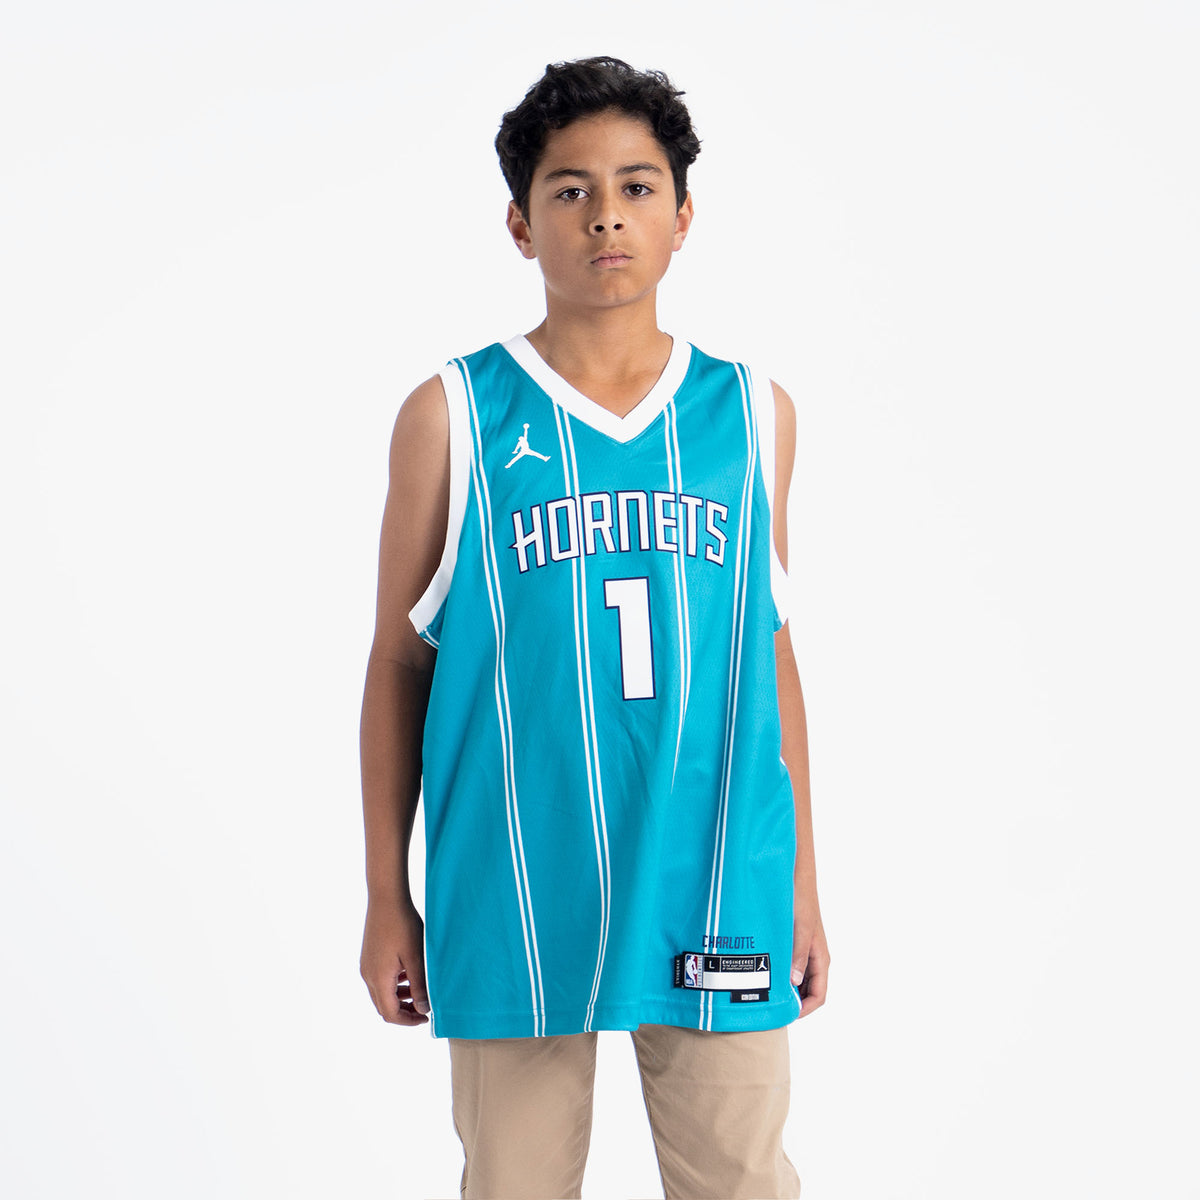 Jordan, Shirts, Charlotte Hornets Ball Jersey